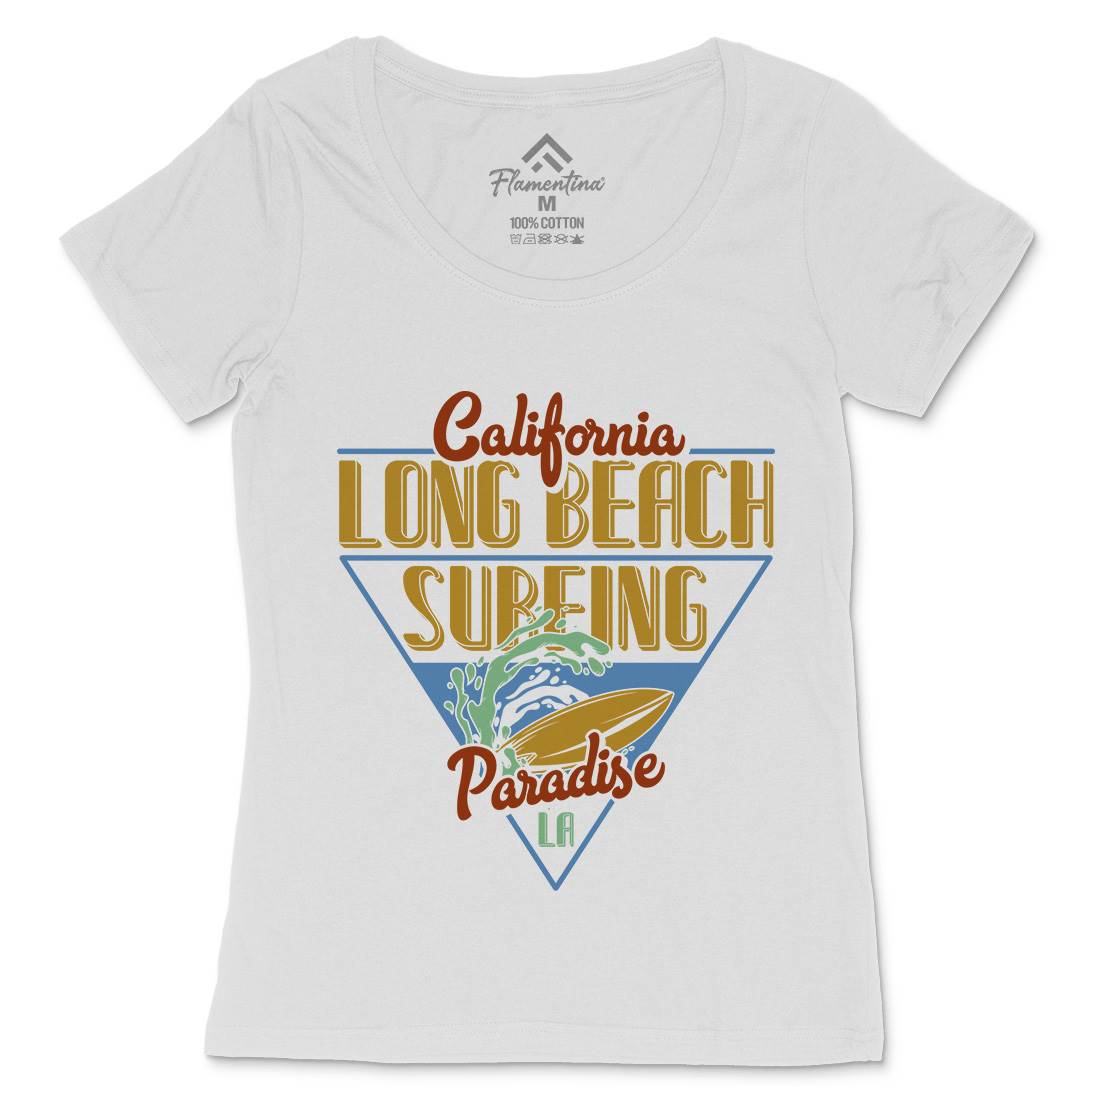 Long Beach Surfing Womens Scoop Neck T-Shirt Surf B359